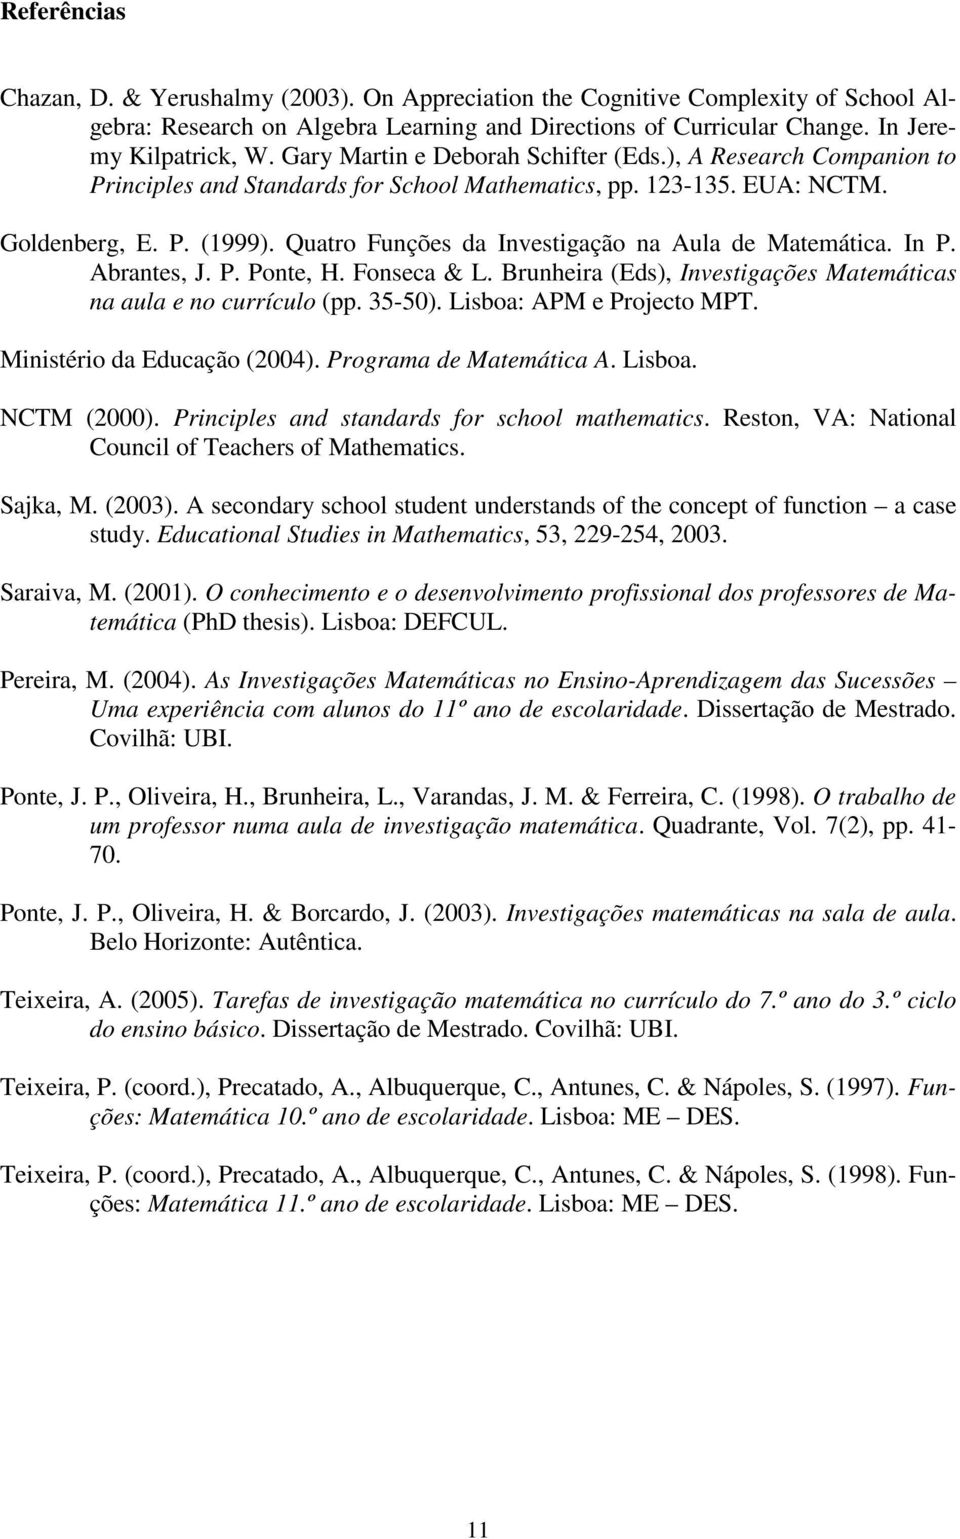 Quatro Funções da Investigação na Aula de Matemática. In P. Abrantes, J. P. Ponte, H. Fonseca & L. Brunheira (Eds), Investigações Matemáticas na aula e no currículo (pp. 35-50).